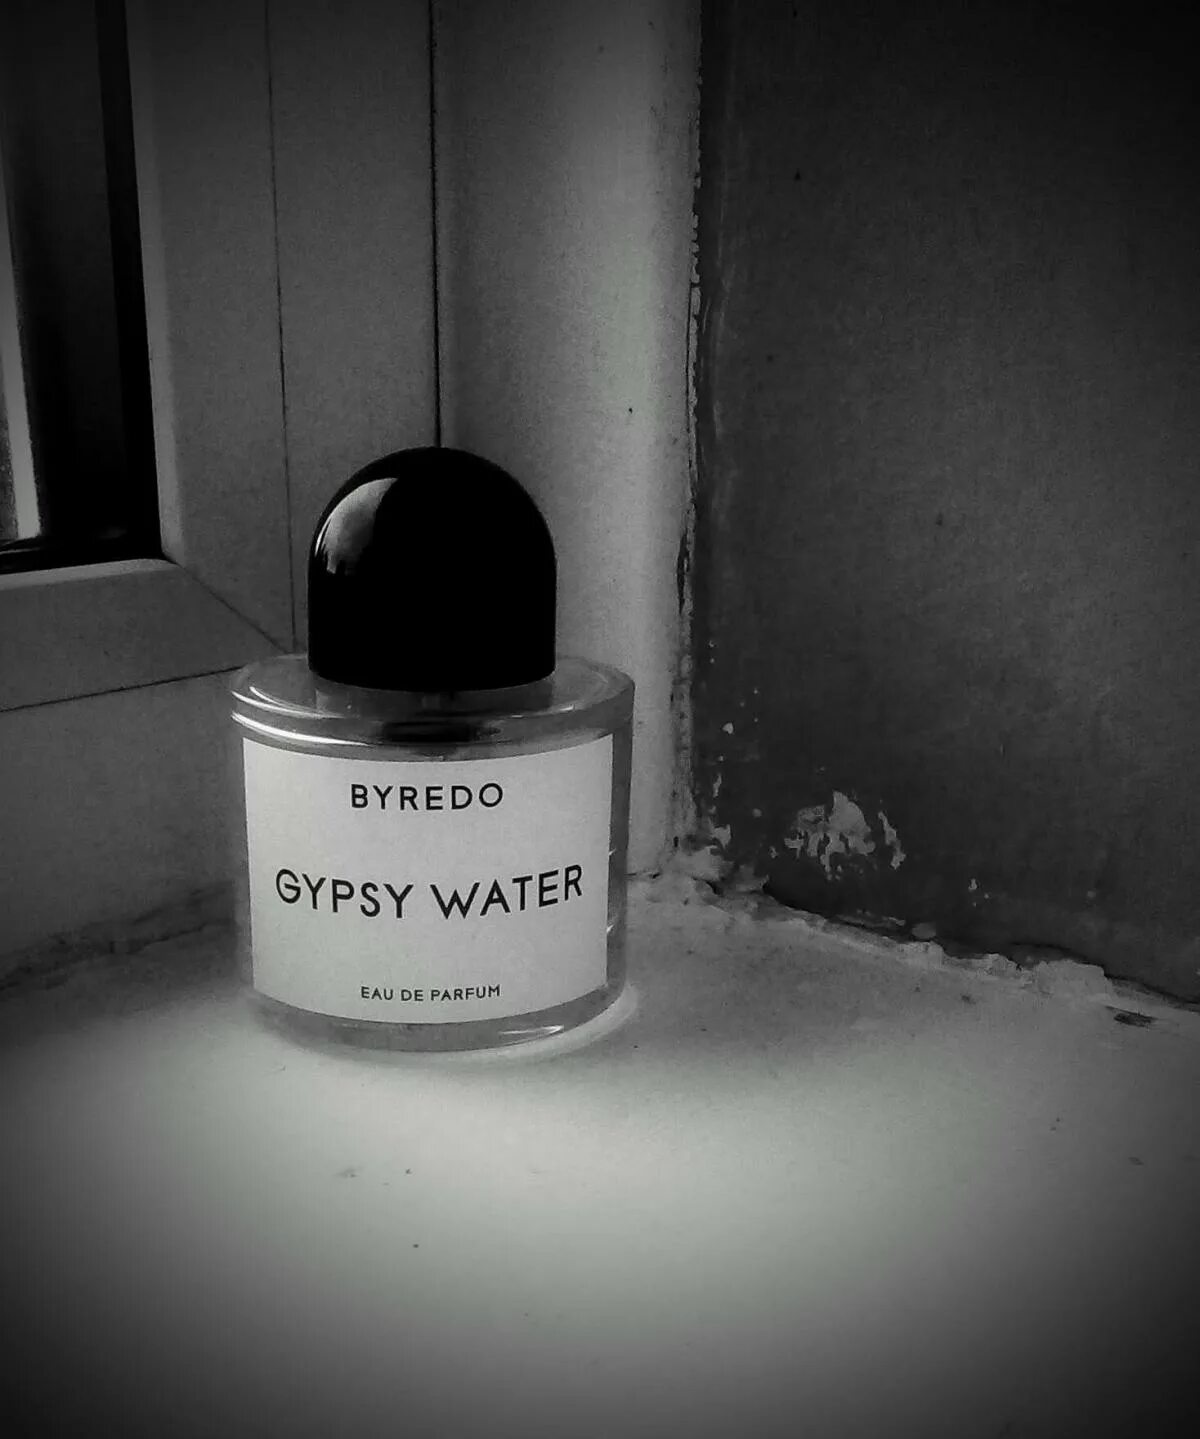 Духи Byredo Gypsy Water. Byredo Gypsy Water Eau de Parfum. Gypsy Water Byredo женские. Парфюм Байредо цыганская вода.